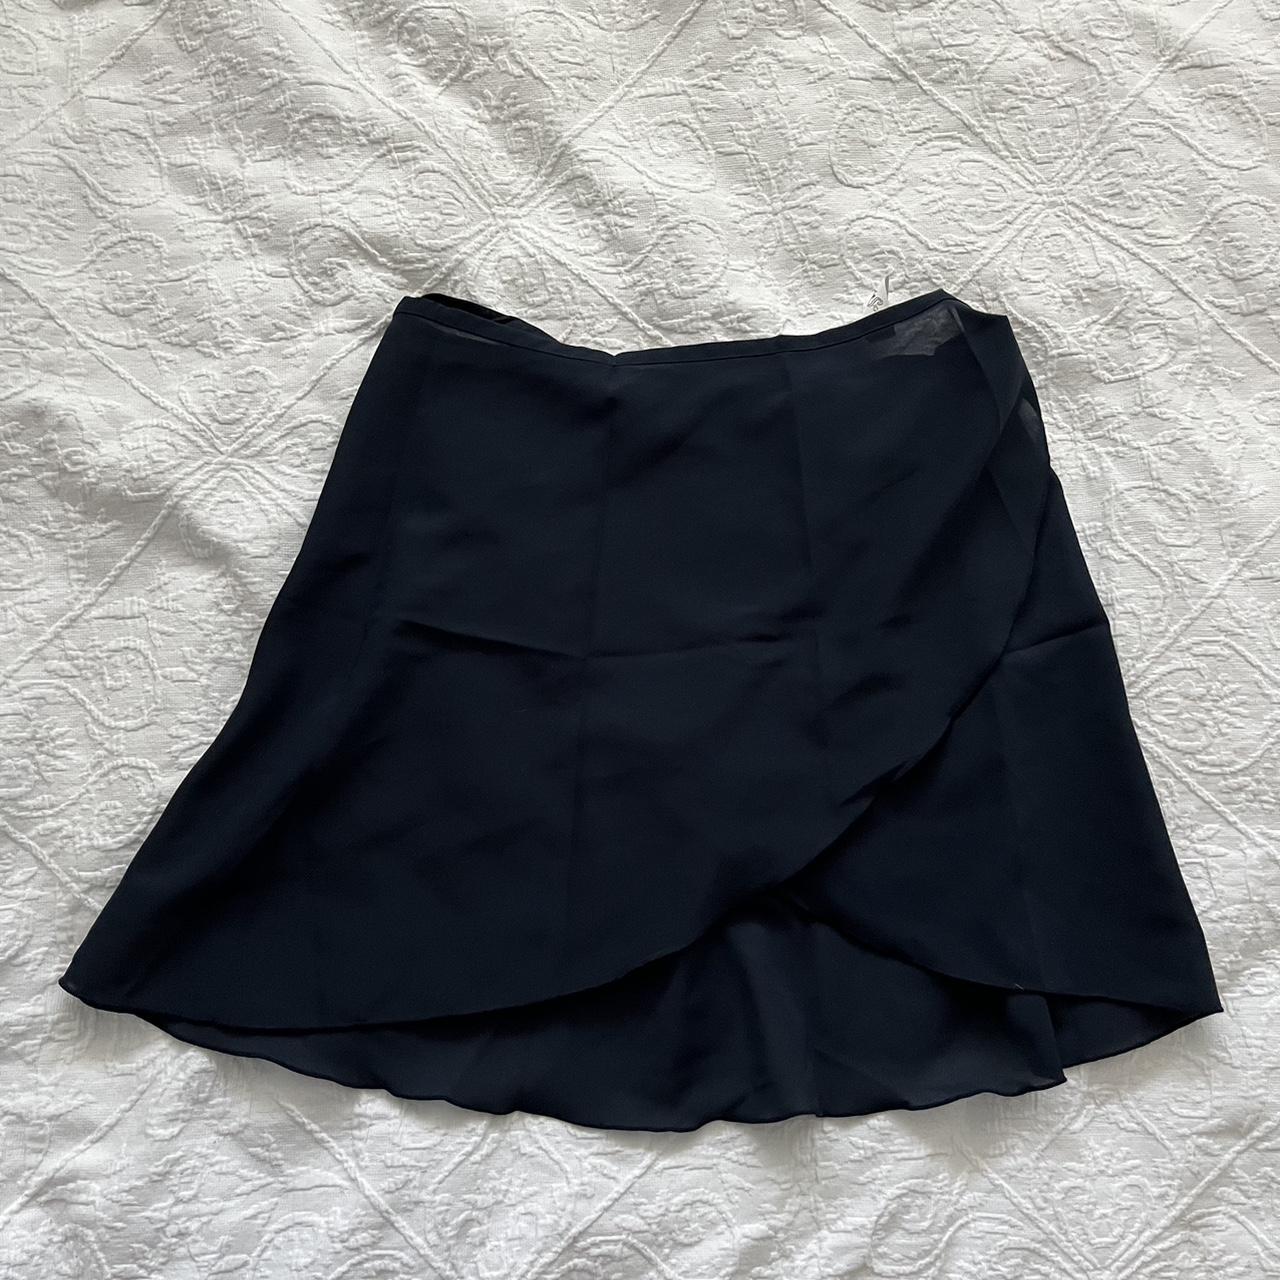 sansha navy ballet wrap skirt - only worn a few times - Depop